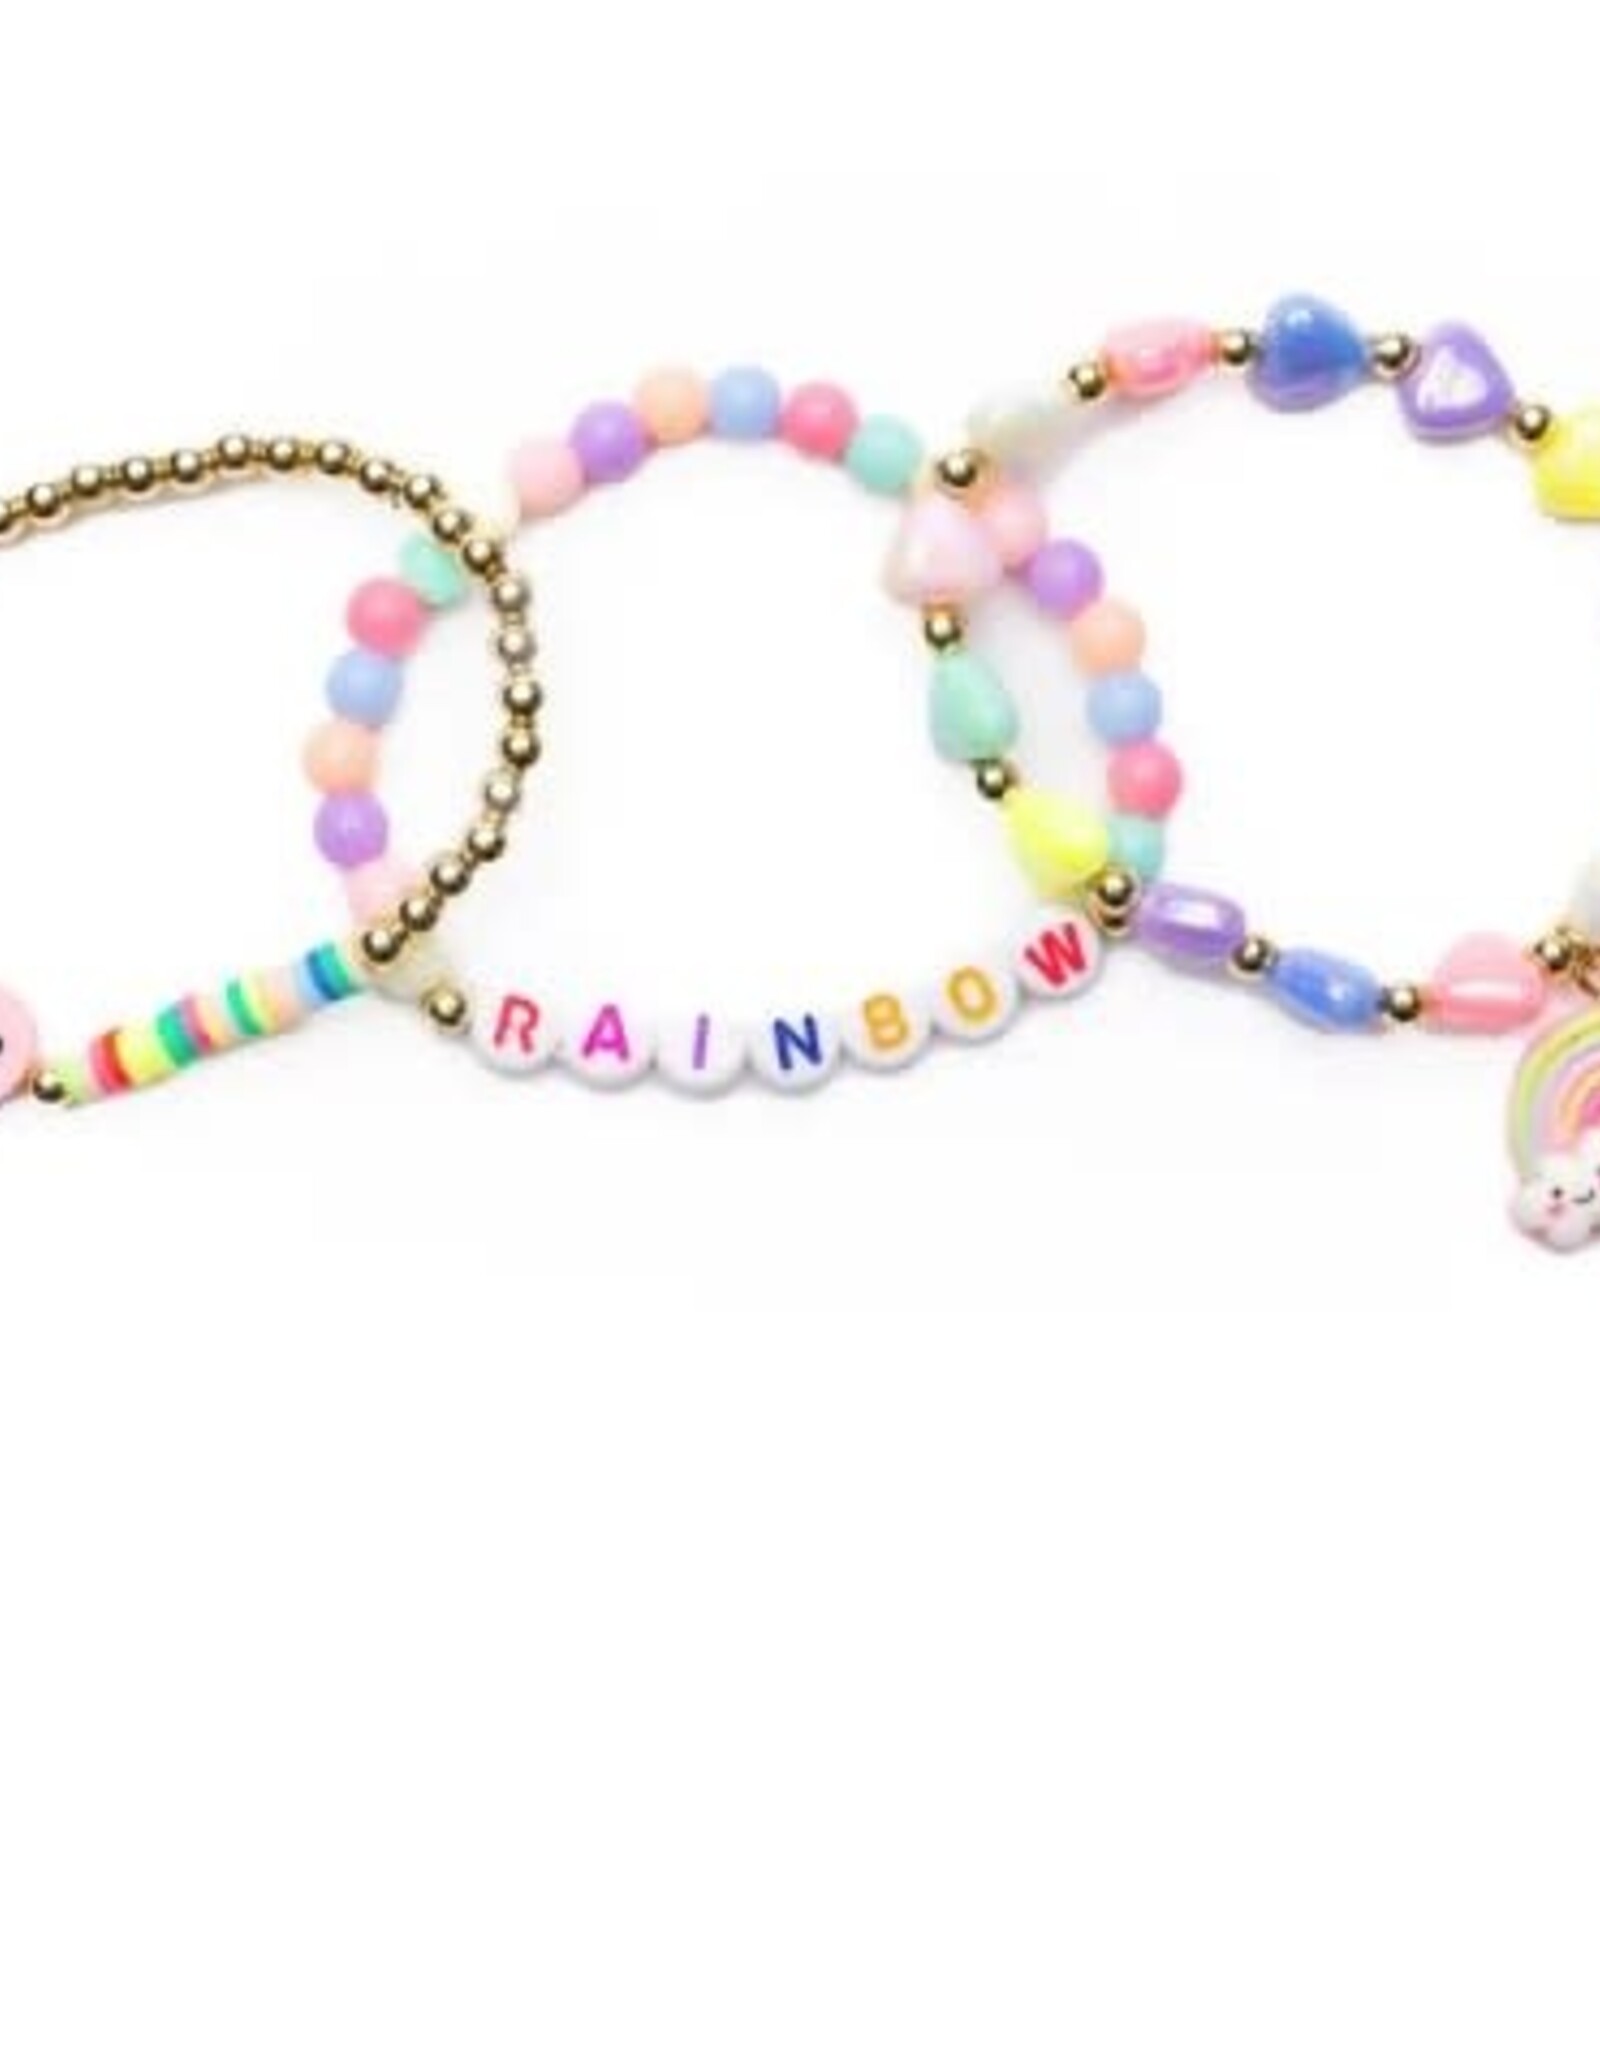 Great Pretenders Rainbow Smiles Bracelet 3pc Set